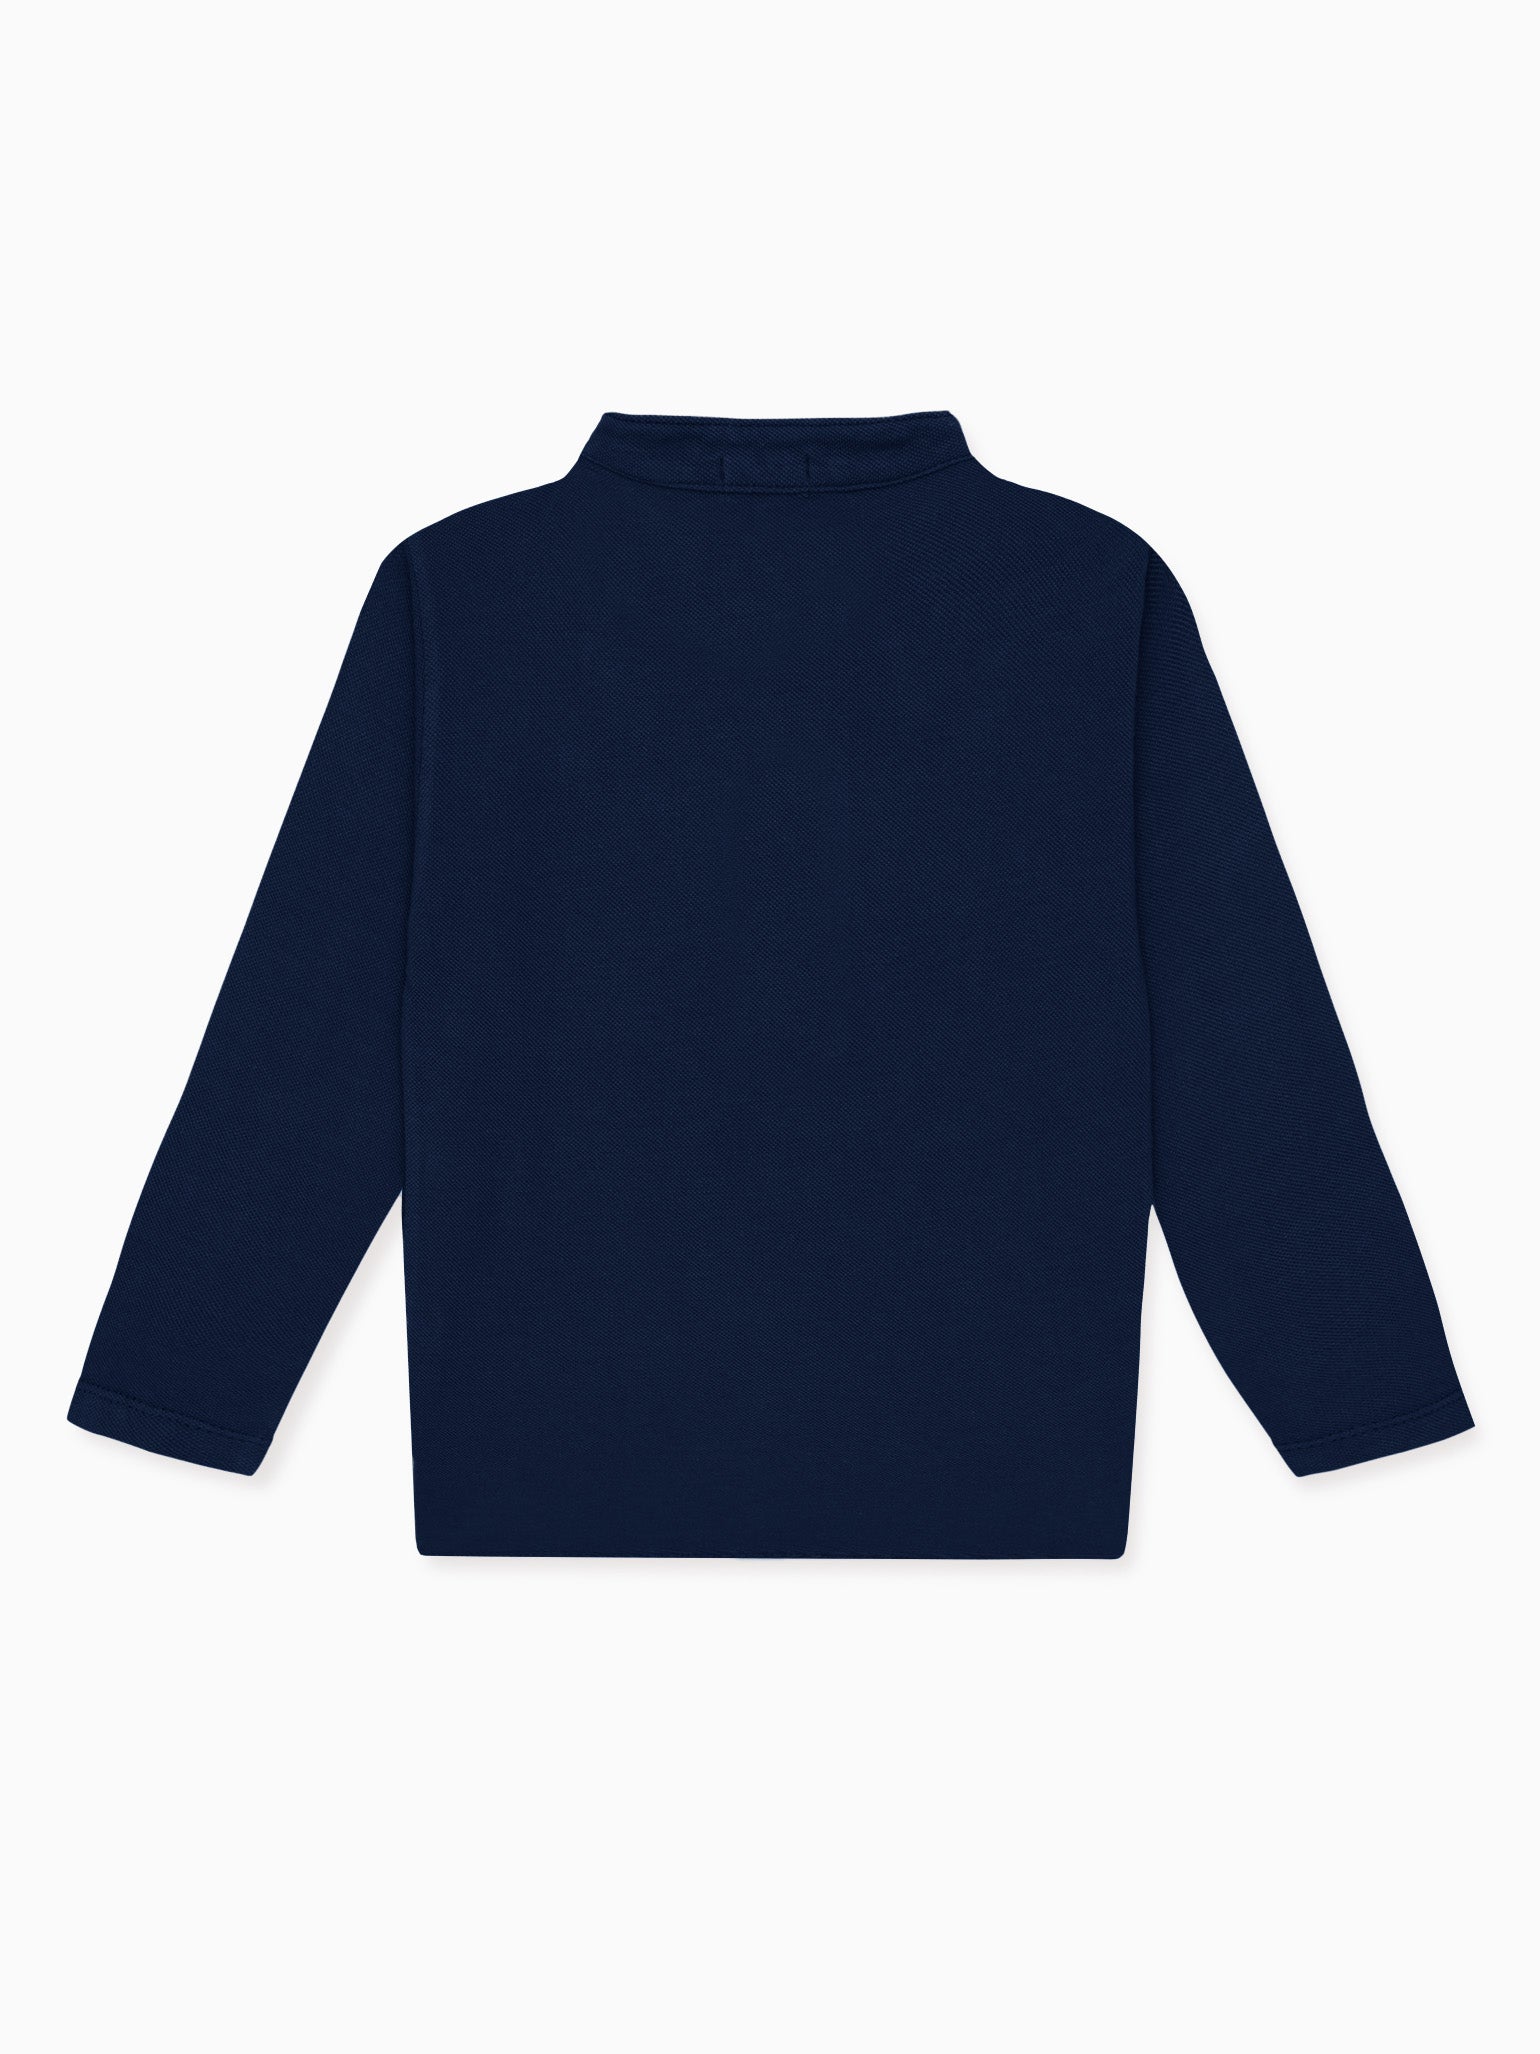 Navy Alcomo Long Sleeve Boy Polo Shirt